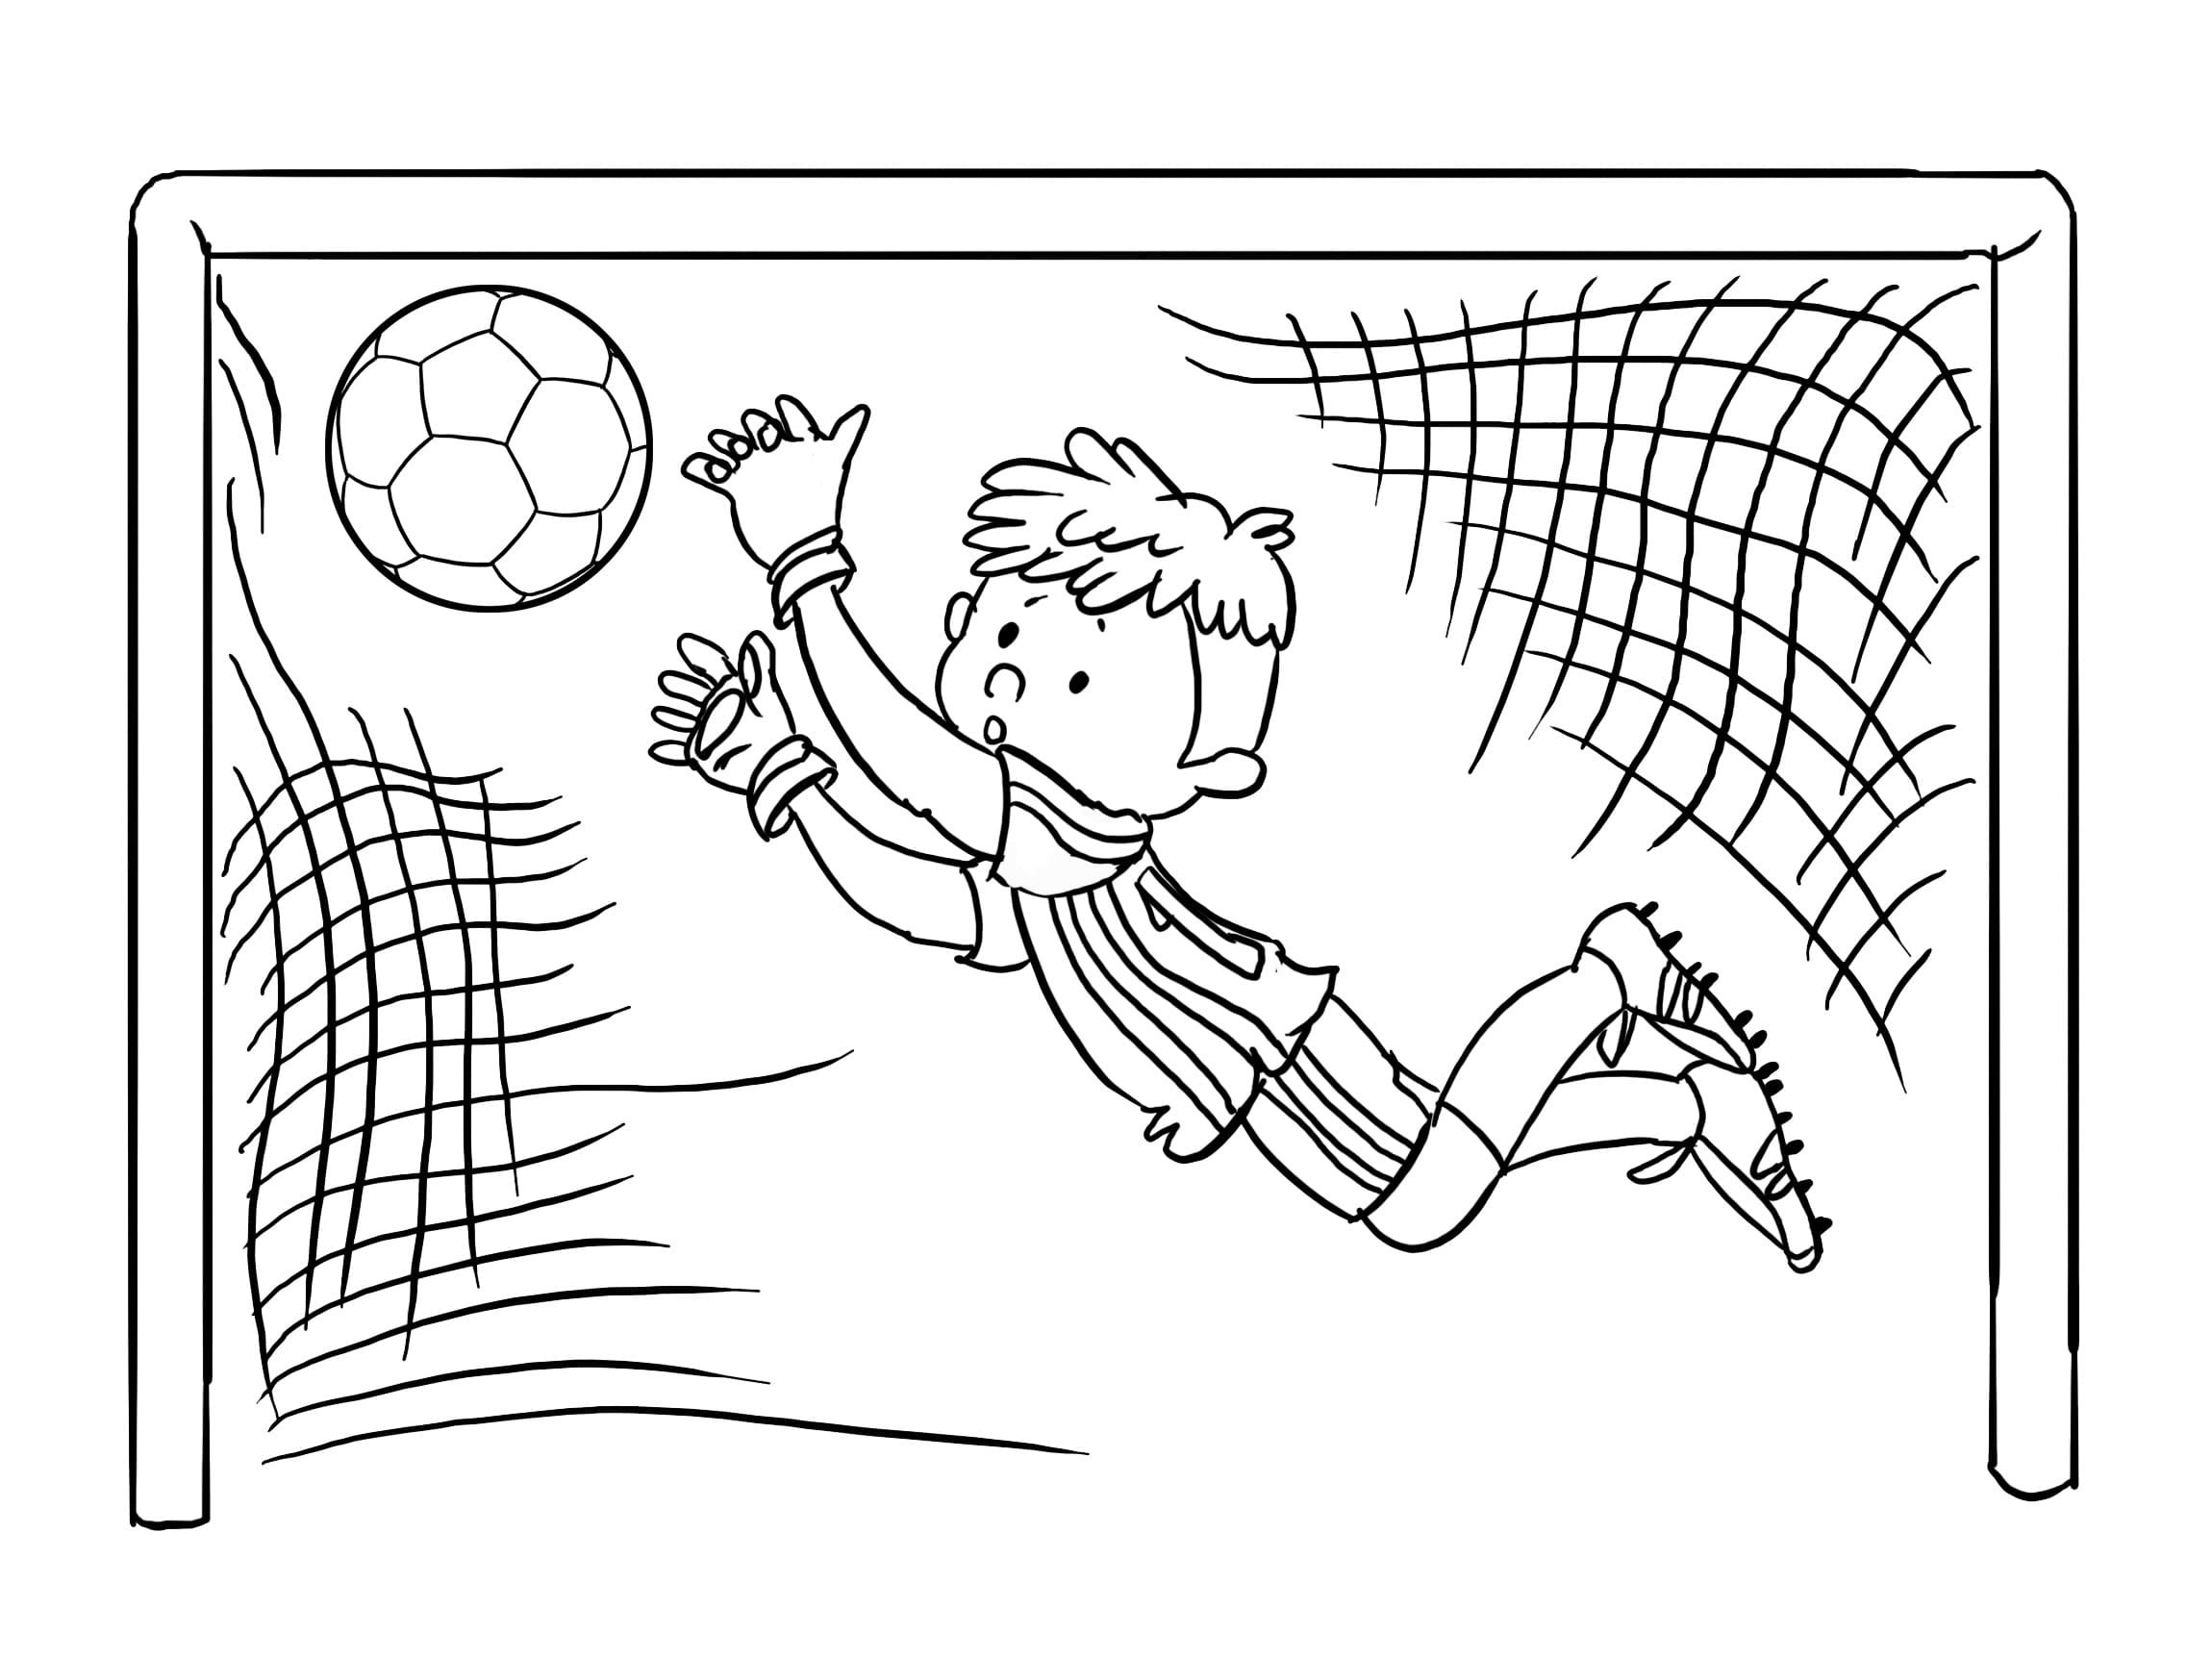 Desenhos de Futebol para colorir. Imprima online para meninos